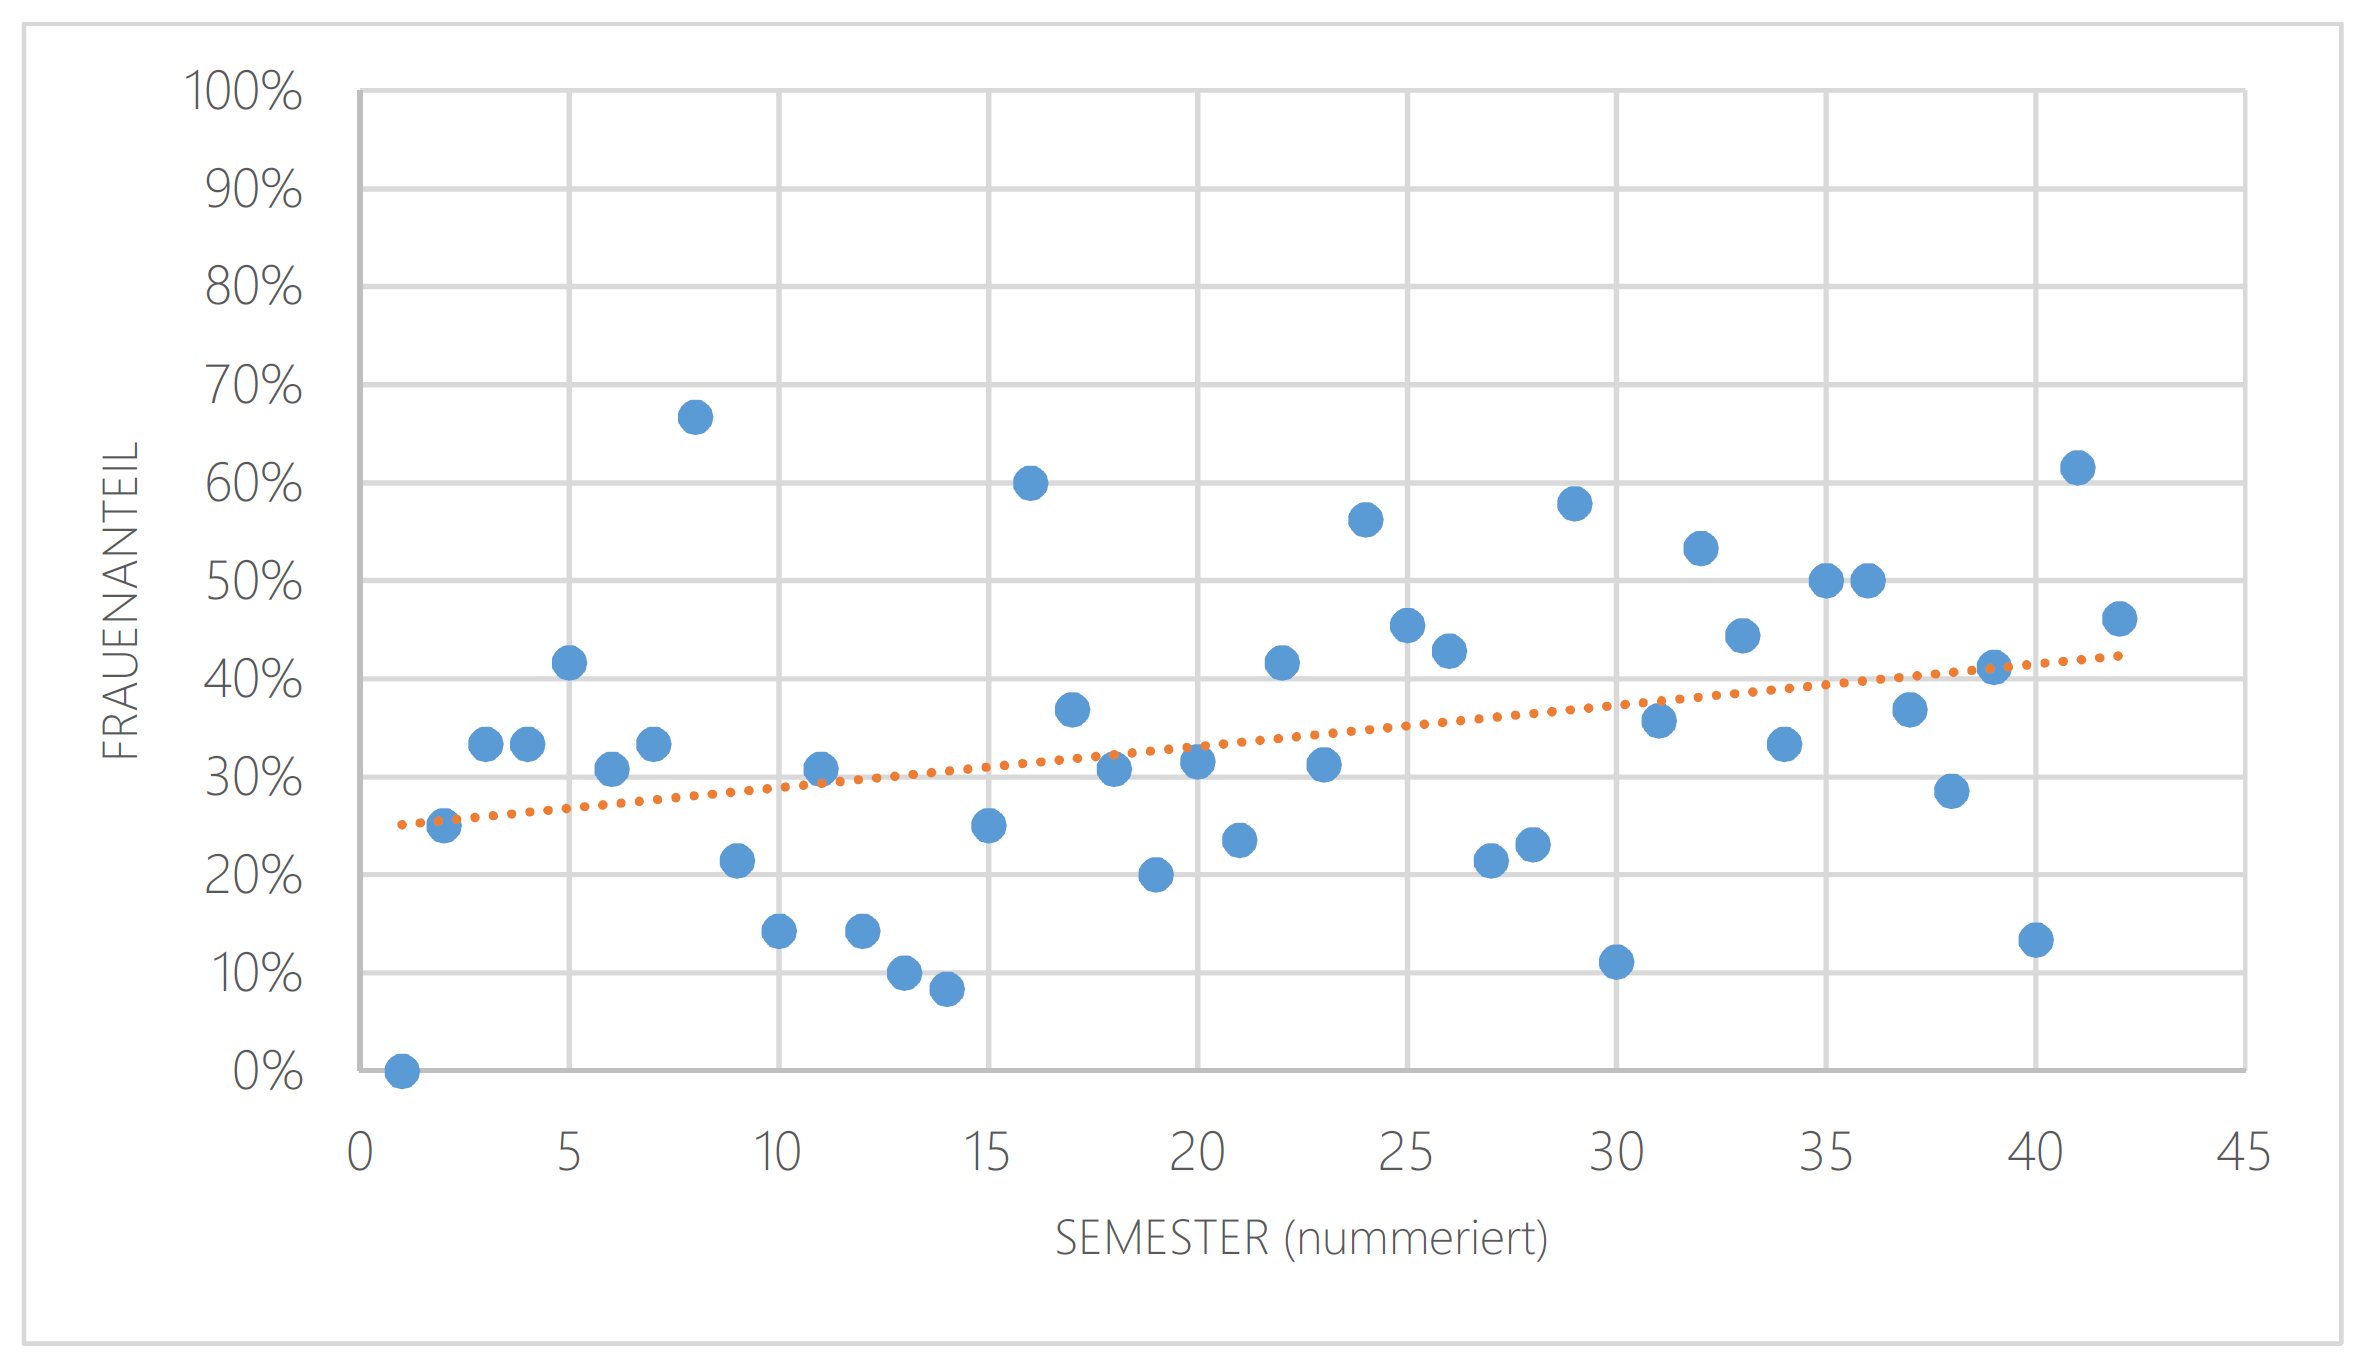 Anteil der Frauen an der Gesamtzahl der ReferentInnen pro Semester (durchnummeriert, 1 = WS 1997/98)